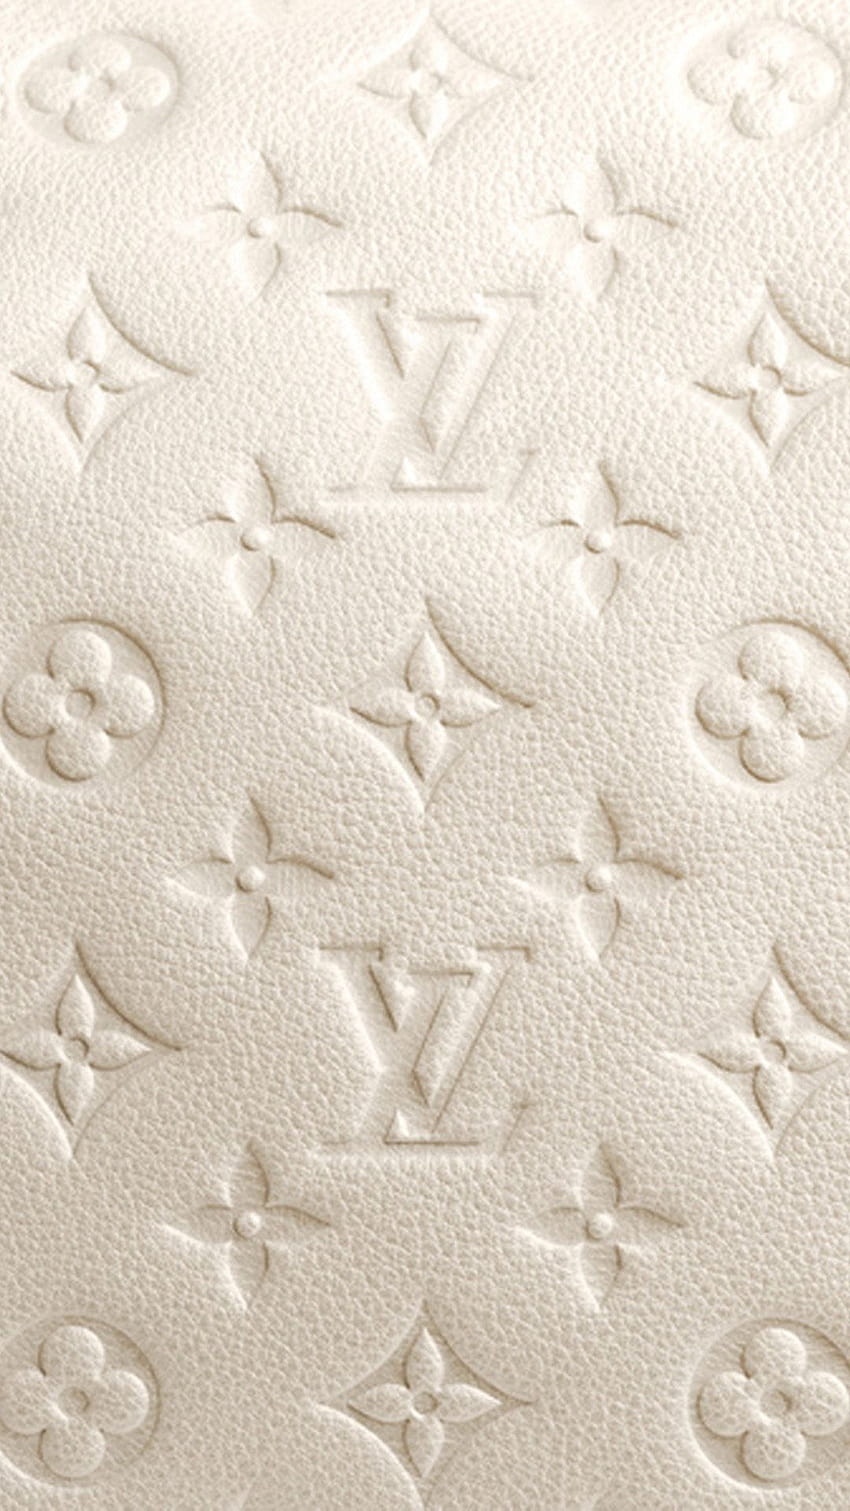 Tập đoàn Louis Vuitton: Tập đoàn Louis Vuitton là một trong những tập đoàn hàng đầu thế giới trong lĩnh vực thời trang và phụ kiện xa xỉ. Không chỉ đơn thuần là một thương hiệu, Louis Vuitton là một biểu tượng đẳng cấp và chất lượng. Hãy cùng khám phá những sản phẩm sang trọng của tập đoàn Louis Vuitton thông qua những bức ảnh đẹp và ấn tượng nhất.